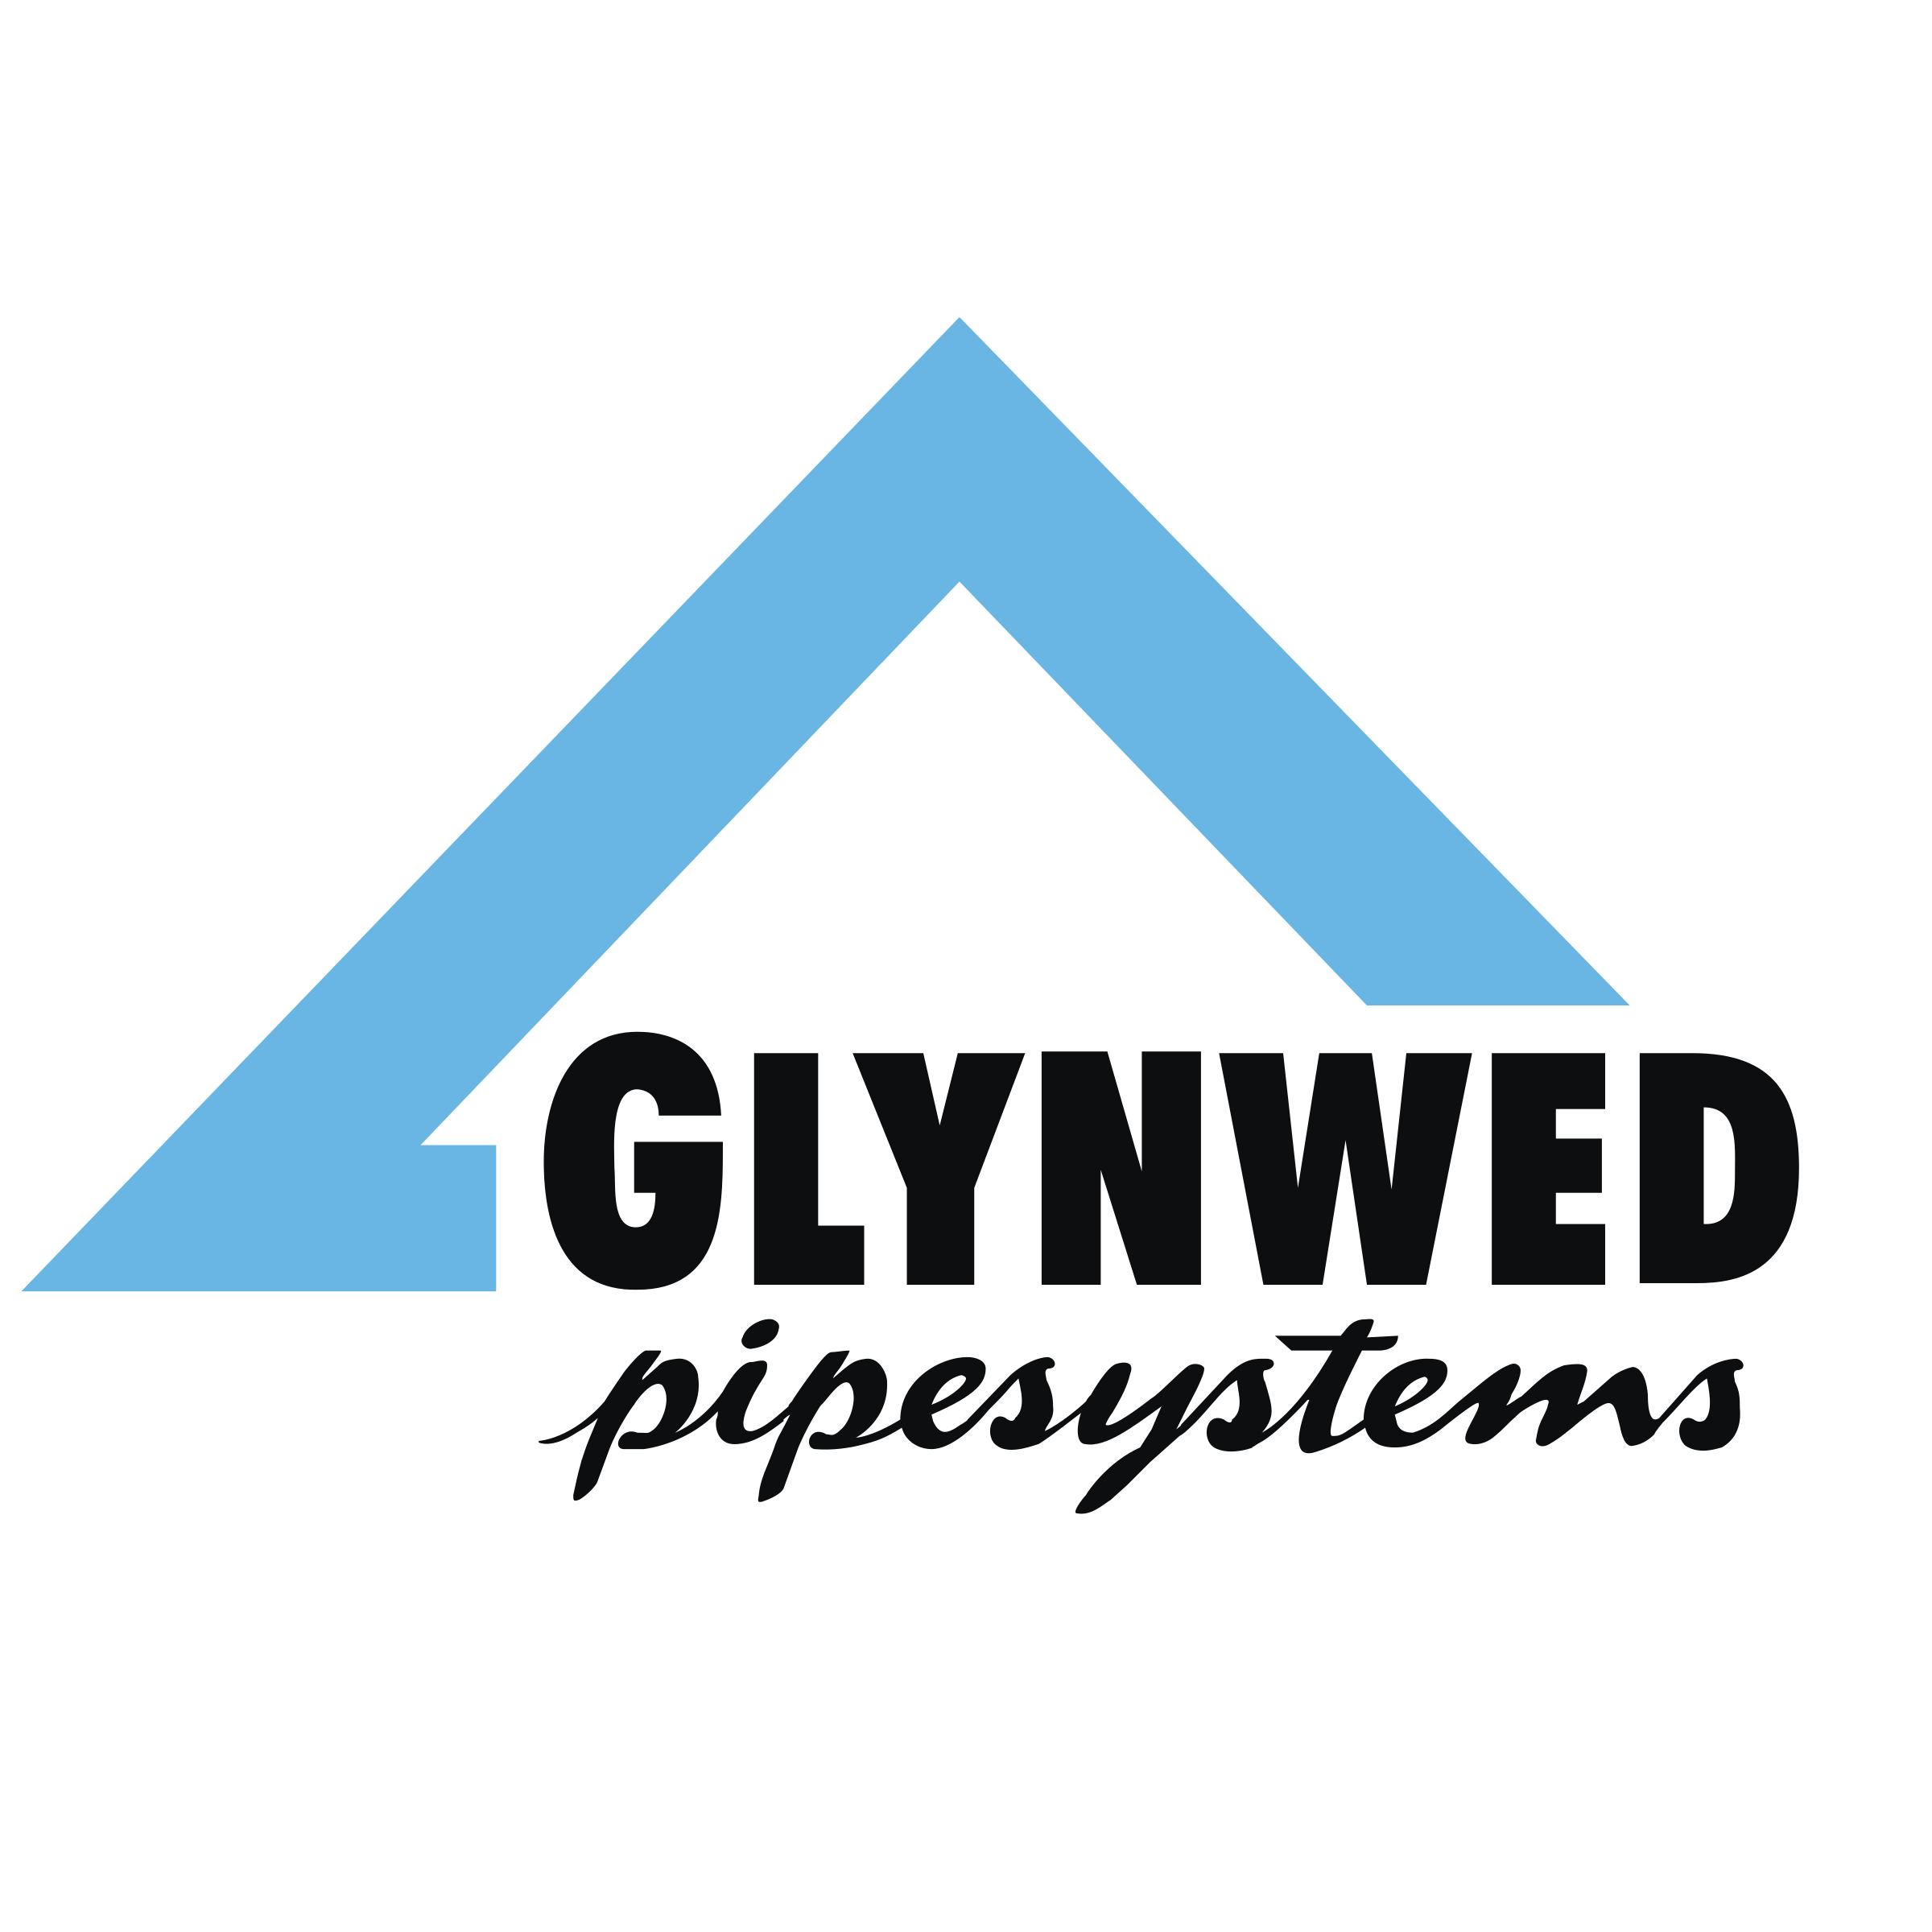 Glynwed_Pipesystems